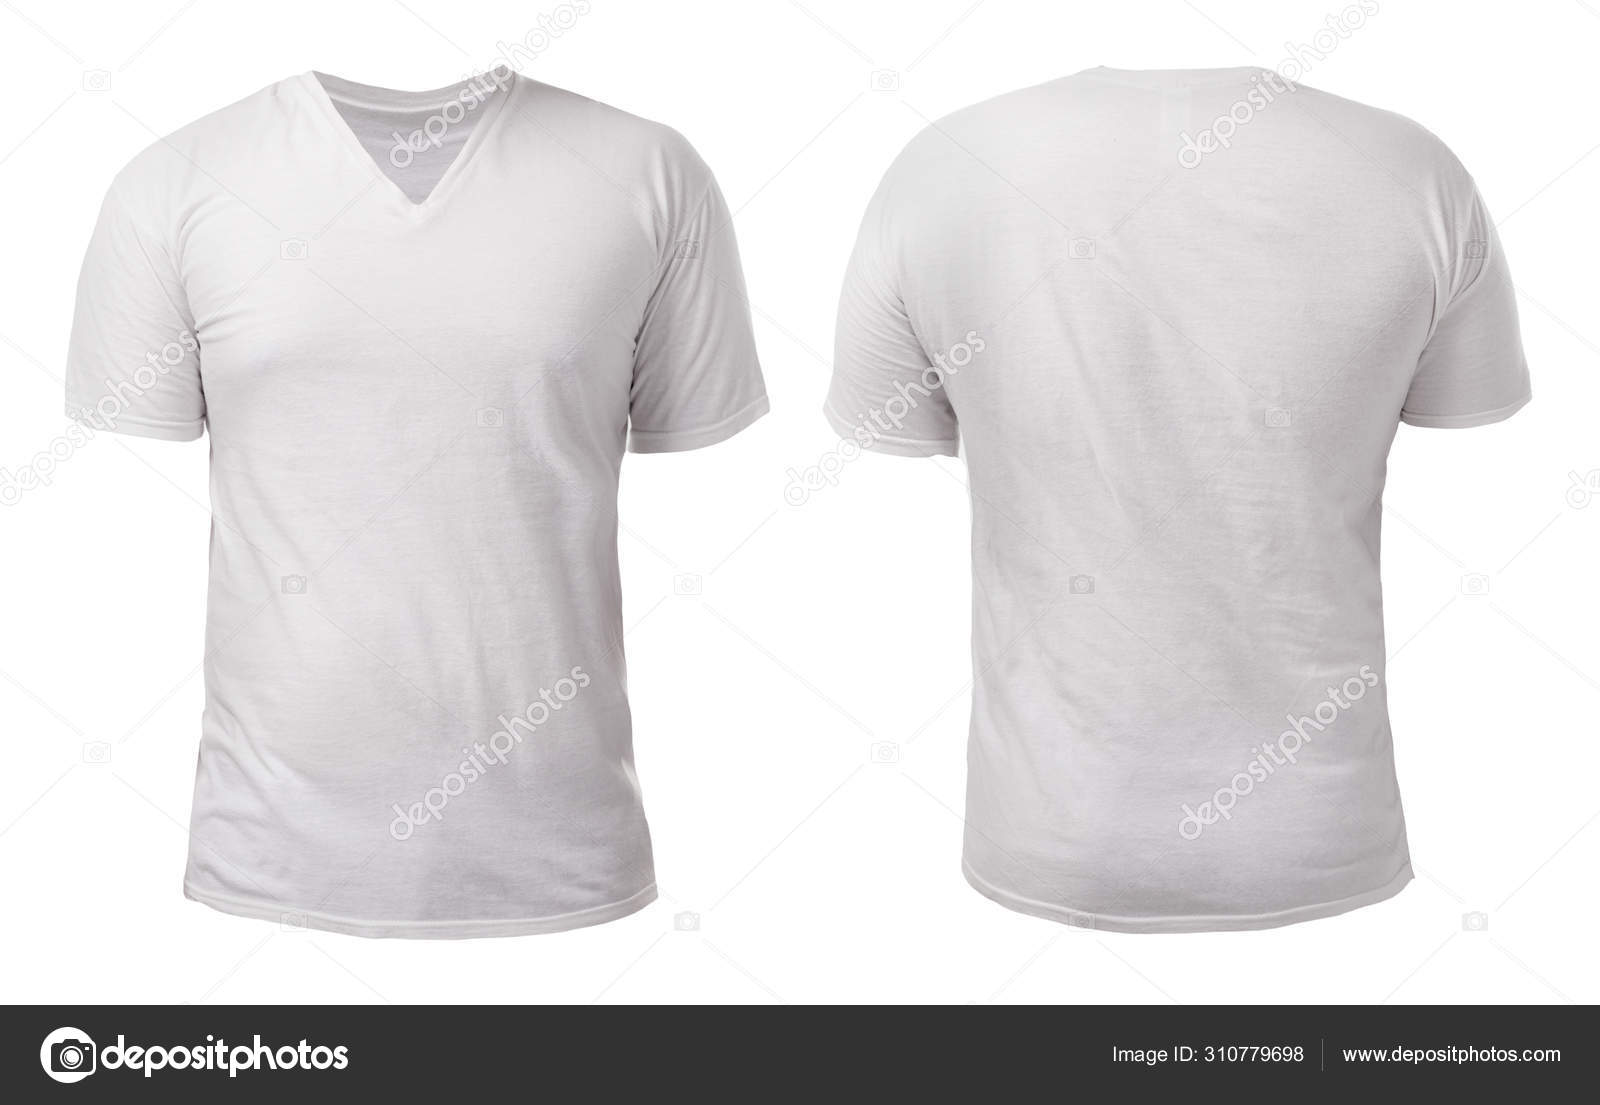 plain white v neck t shirt